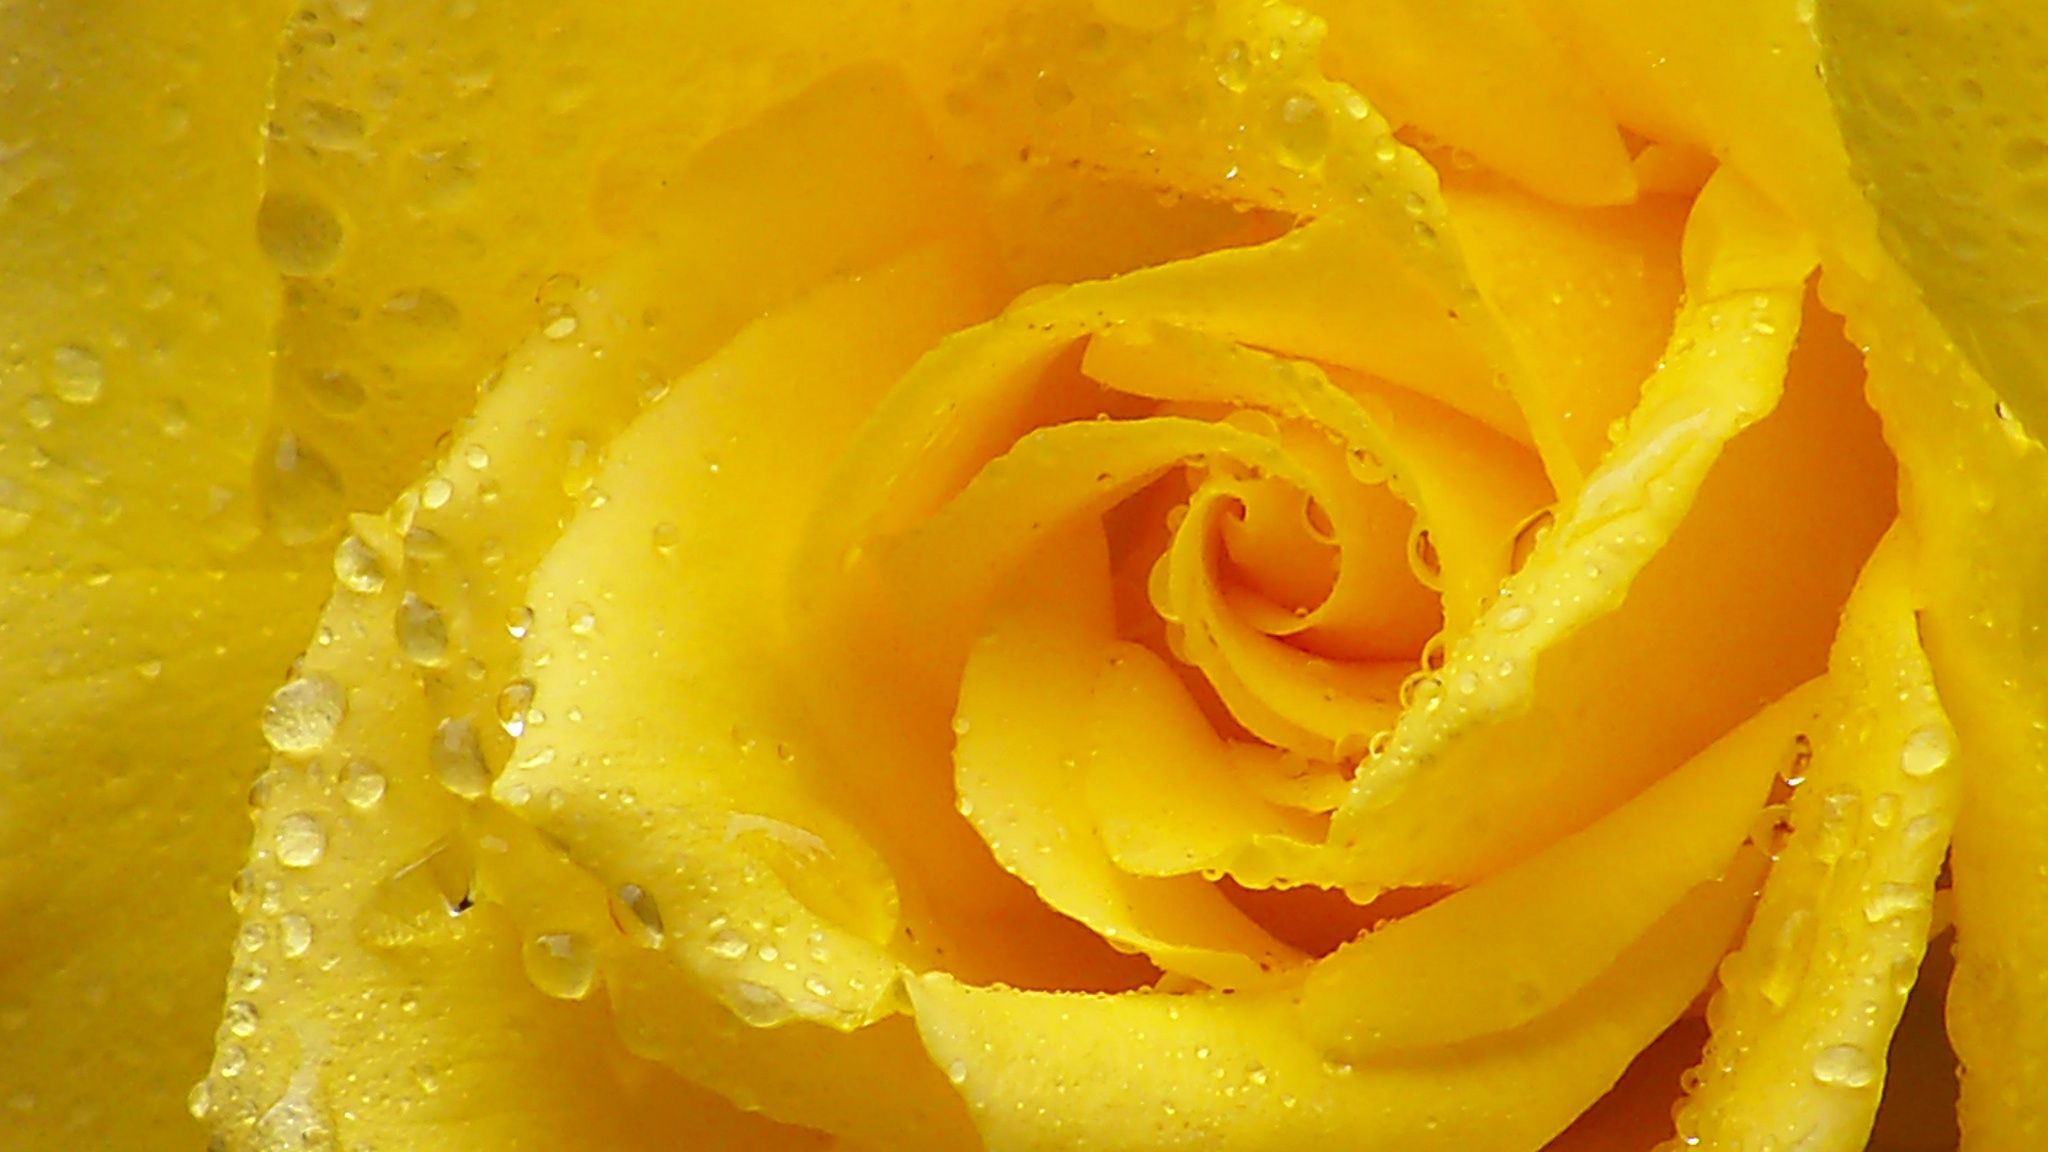 Download Wallpaper 2048x1152 Rose, Yellow rose, Petals, Drops